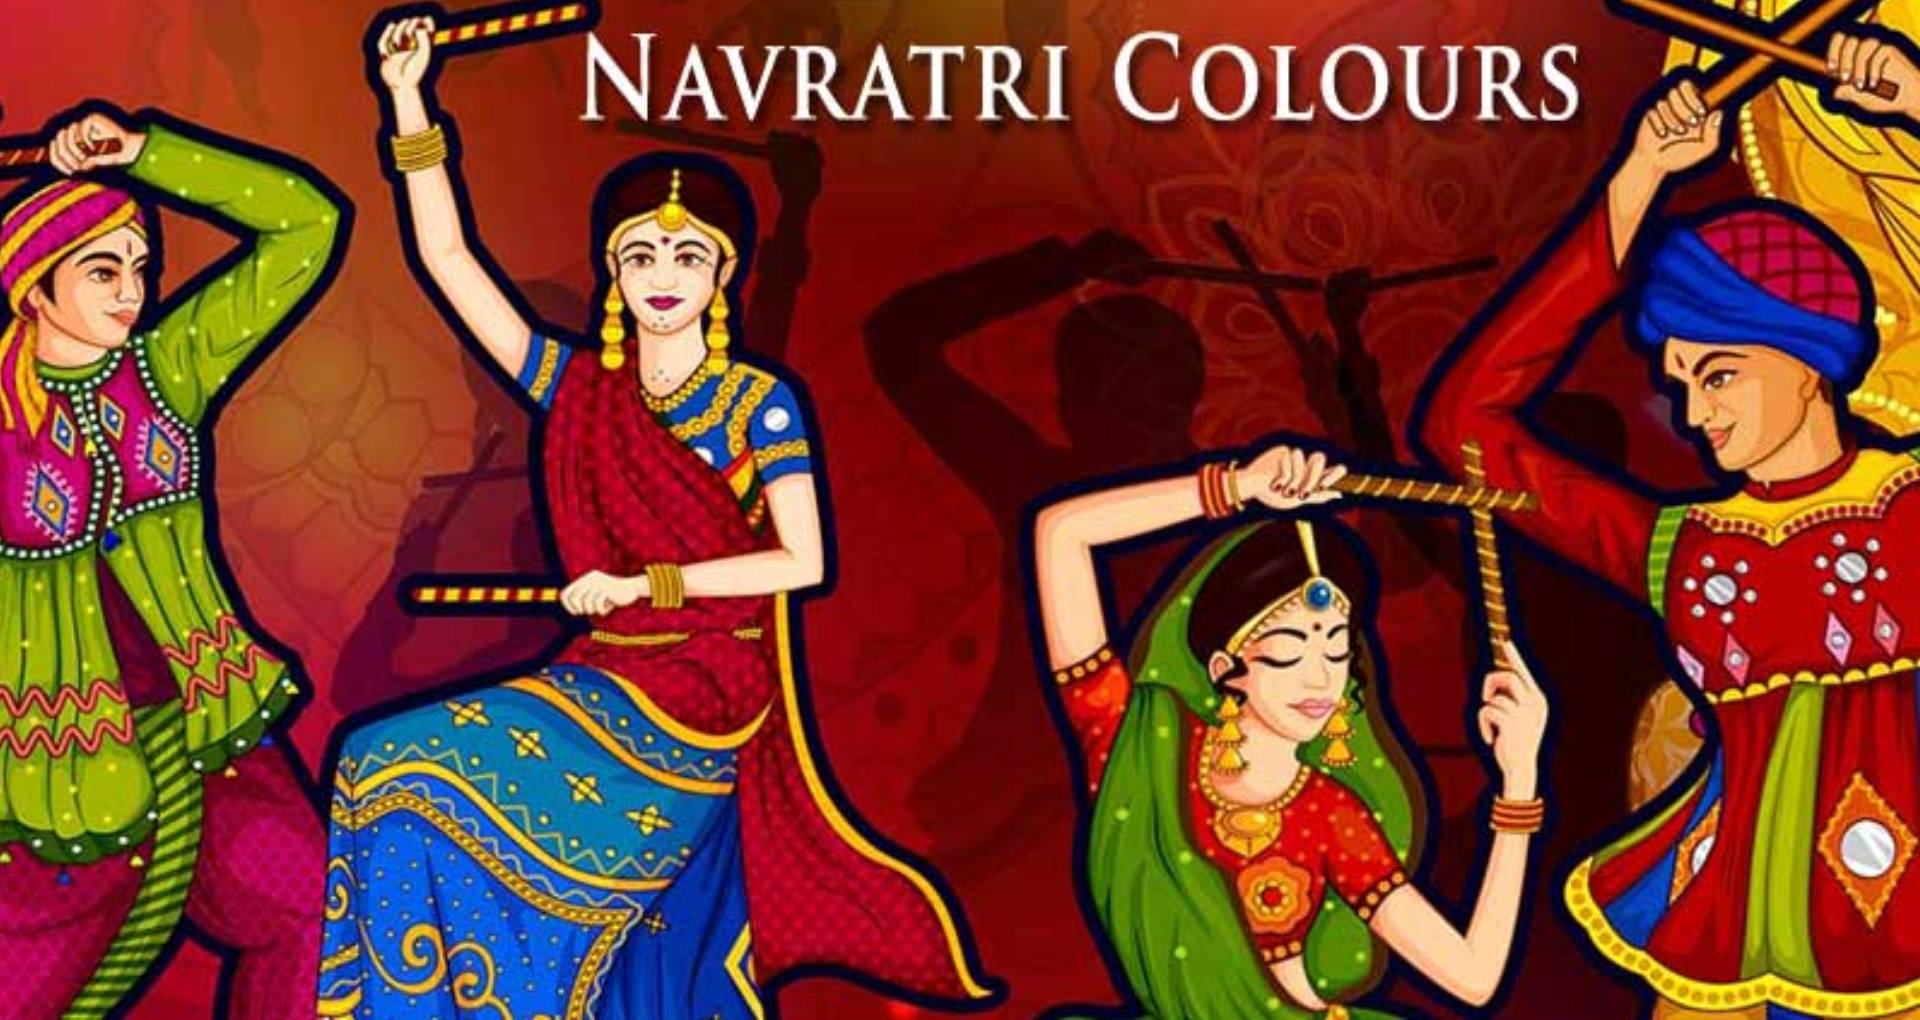 Navratri 2019 Colours: नवरात्रि के नौ दिन पहने जाते हैं 9 अलग-अलग रंग के कपड़े, जानिए इसका महत्व